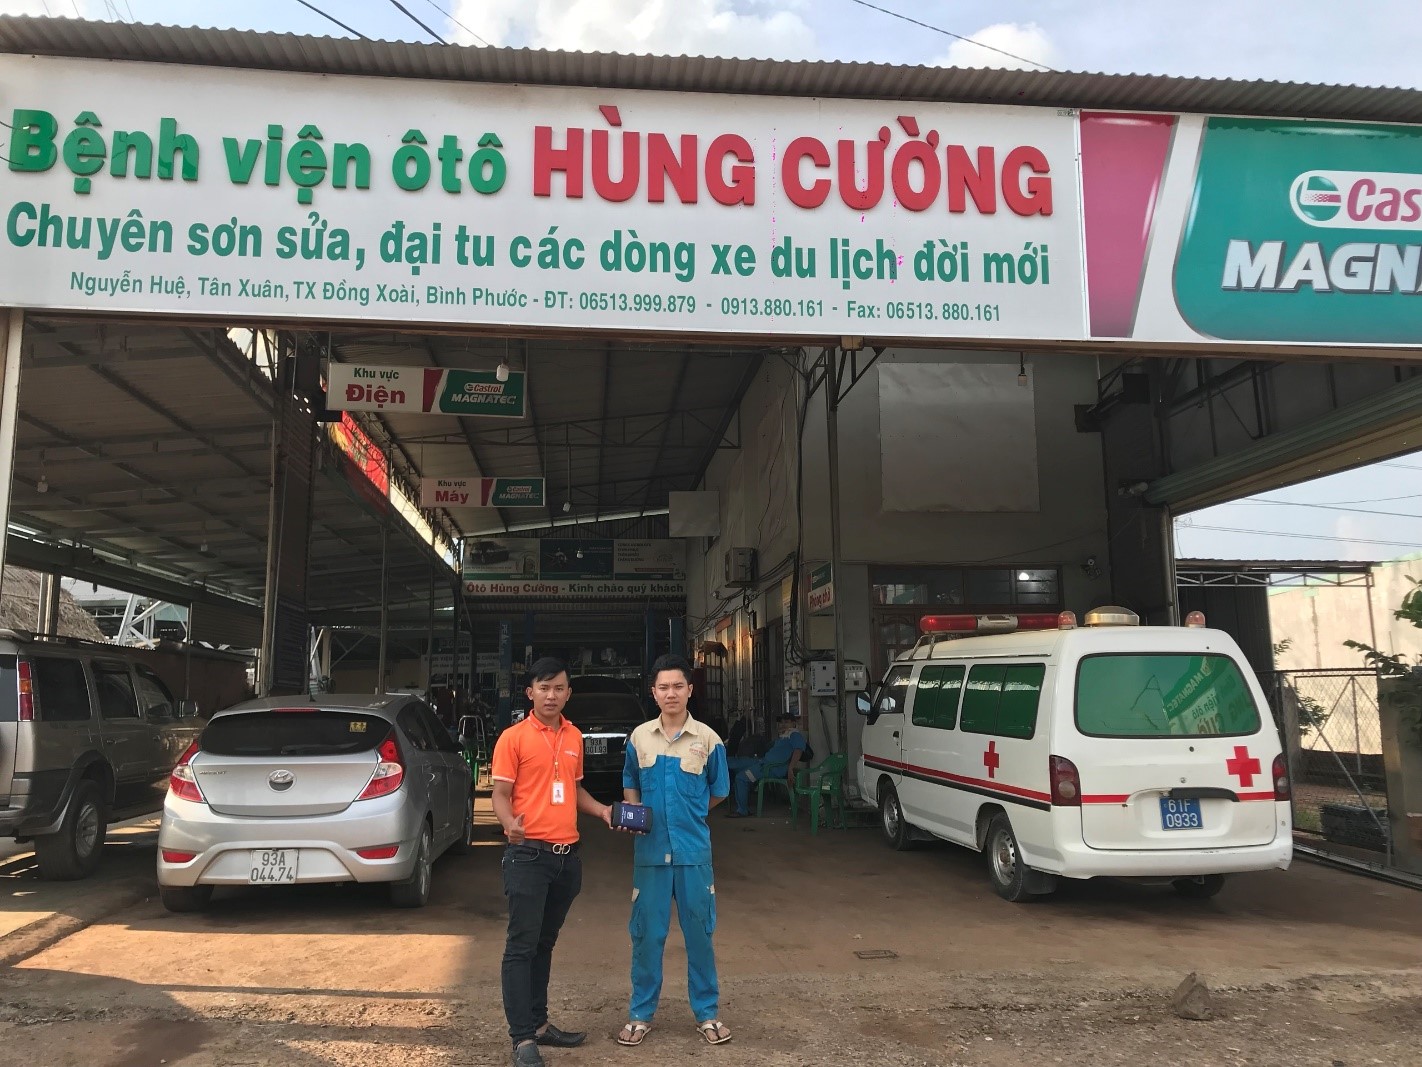 OBD Việt Nam Chuyển Giao Thiết Bị Chẩn Đoán Chuyên Hãng GM MDI Tại Đồng Xoài, Bình Phước